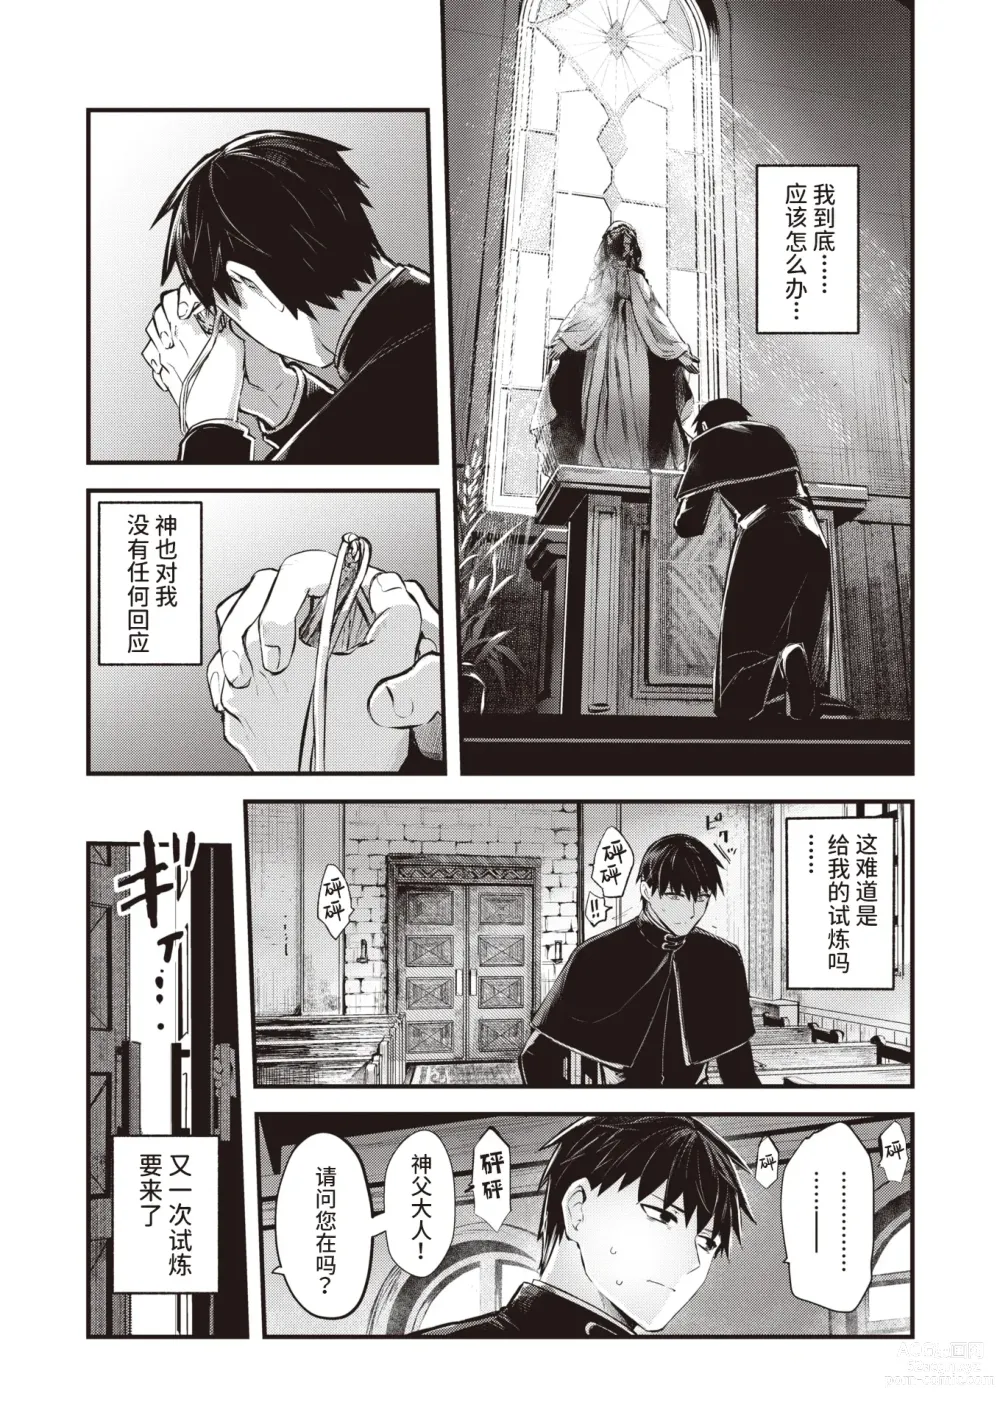 Page 3 of manga 侵入梦境的淫欲 后篇